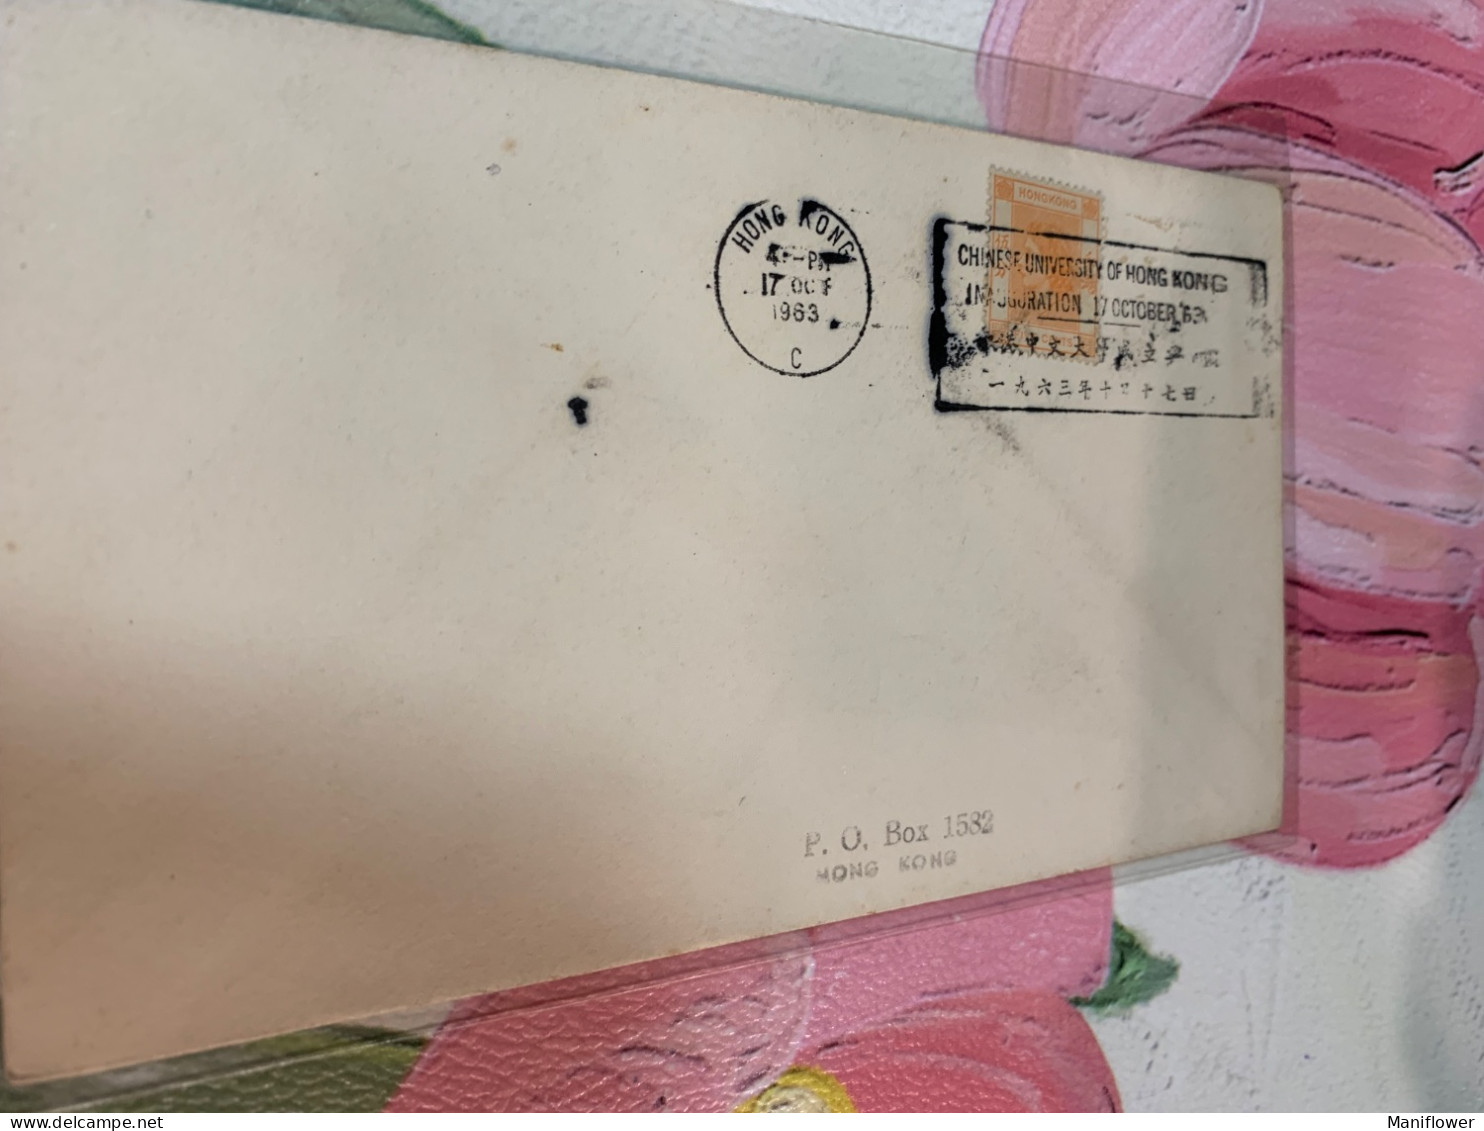 Hong Kong Stamp 1963 Postally Used Cover Slogans Chinese University Of Hong Kong - Briefe U. Dokumente